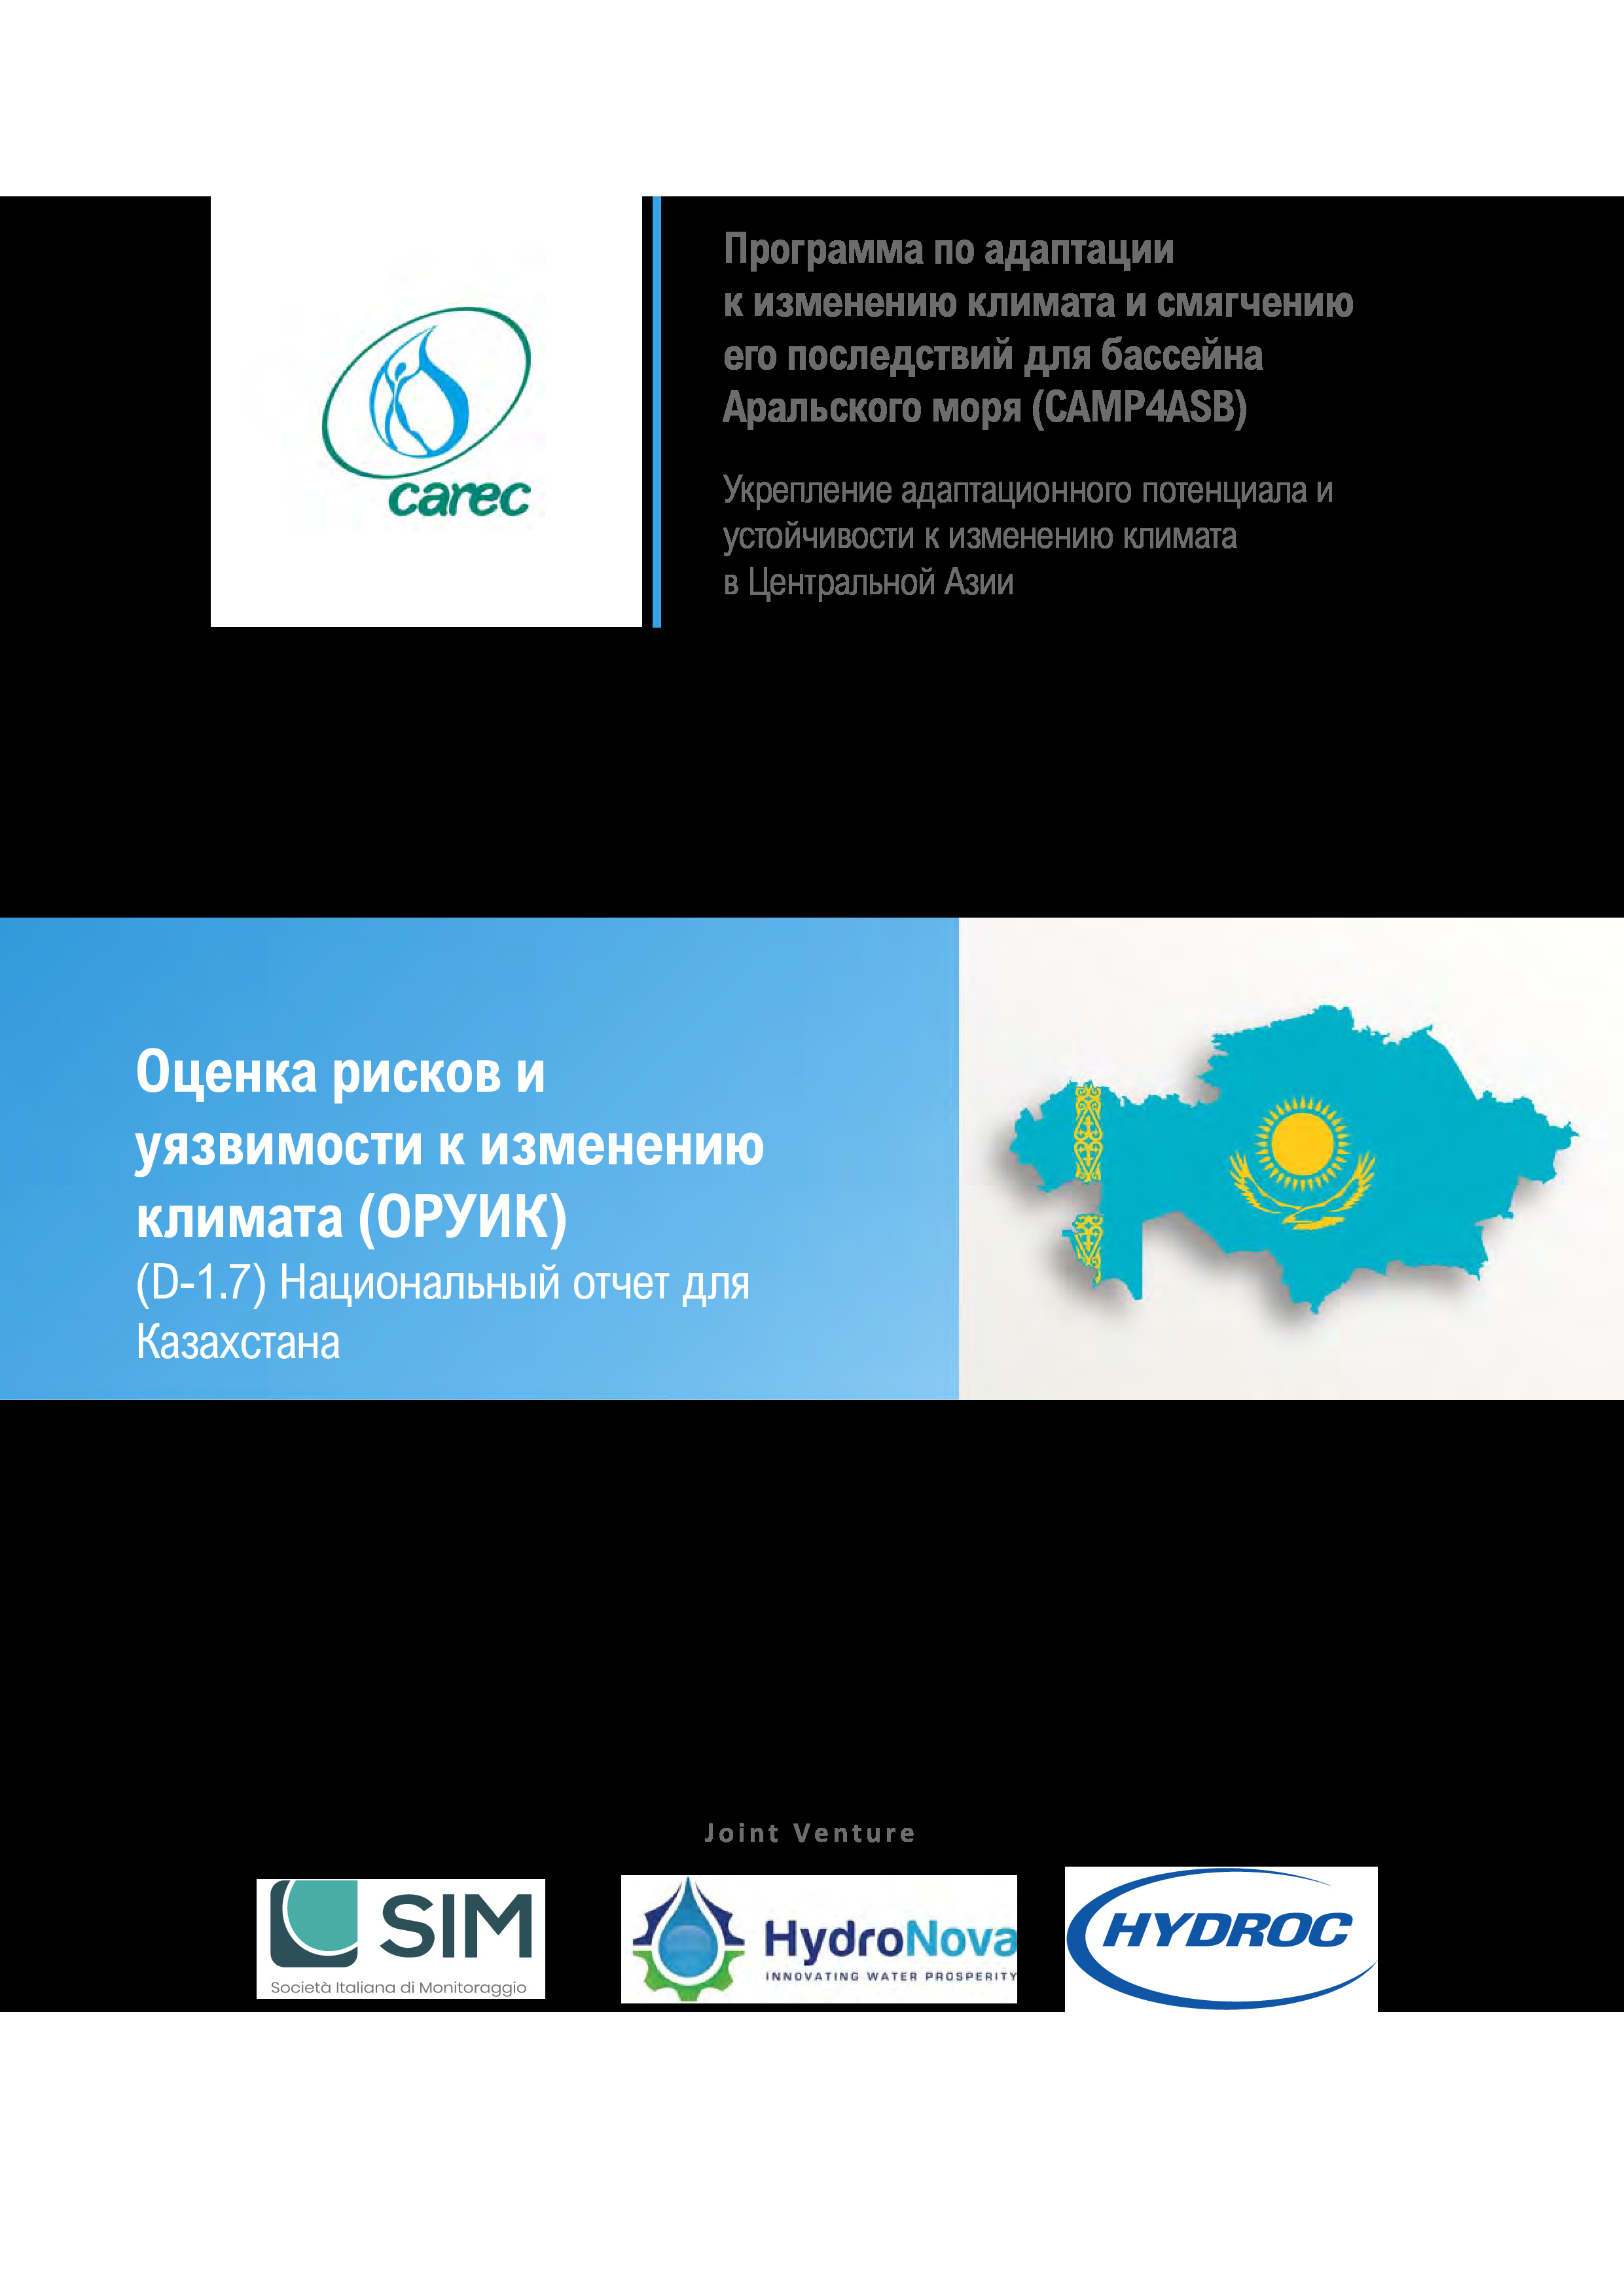 Оценка рисков и уязвимости к изменению климата (ОРУИК). Национальный отчет для Казахстана, 2021